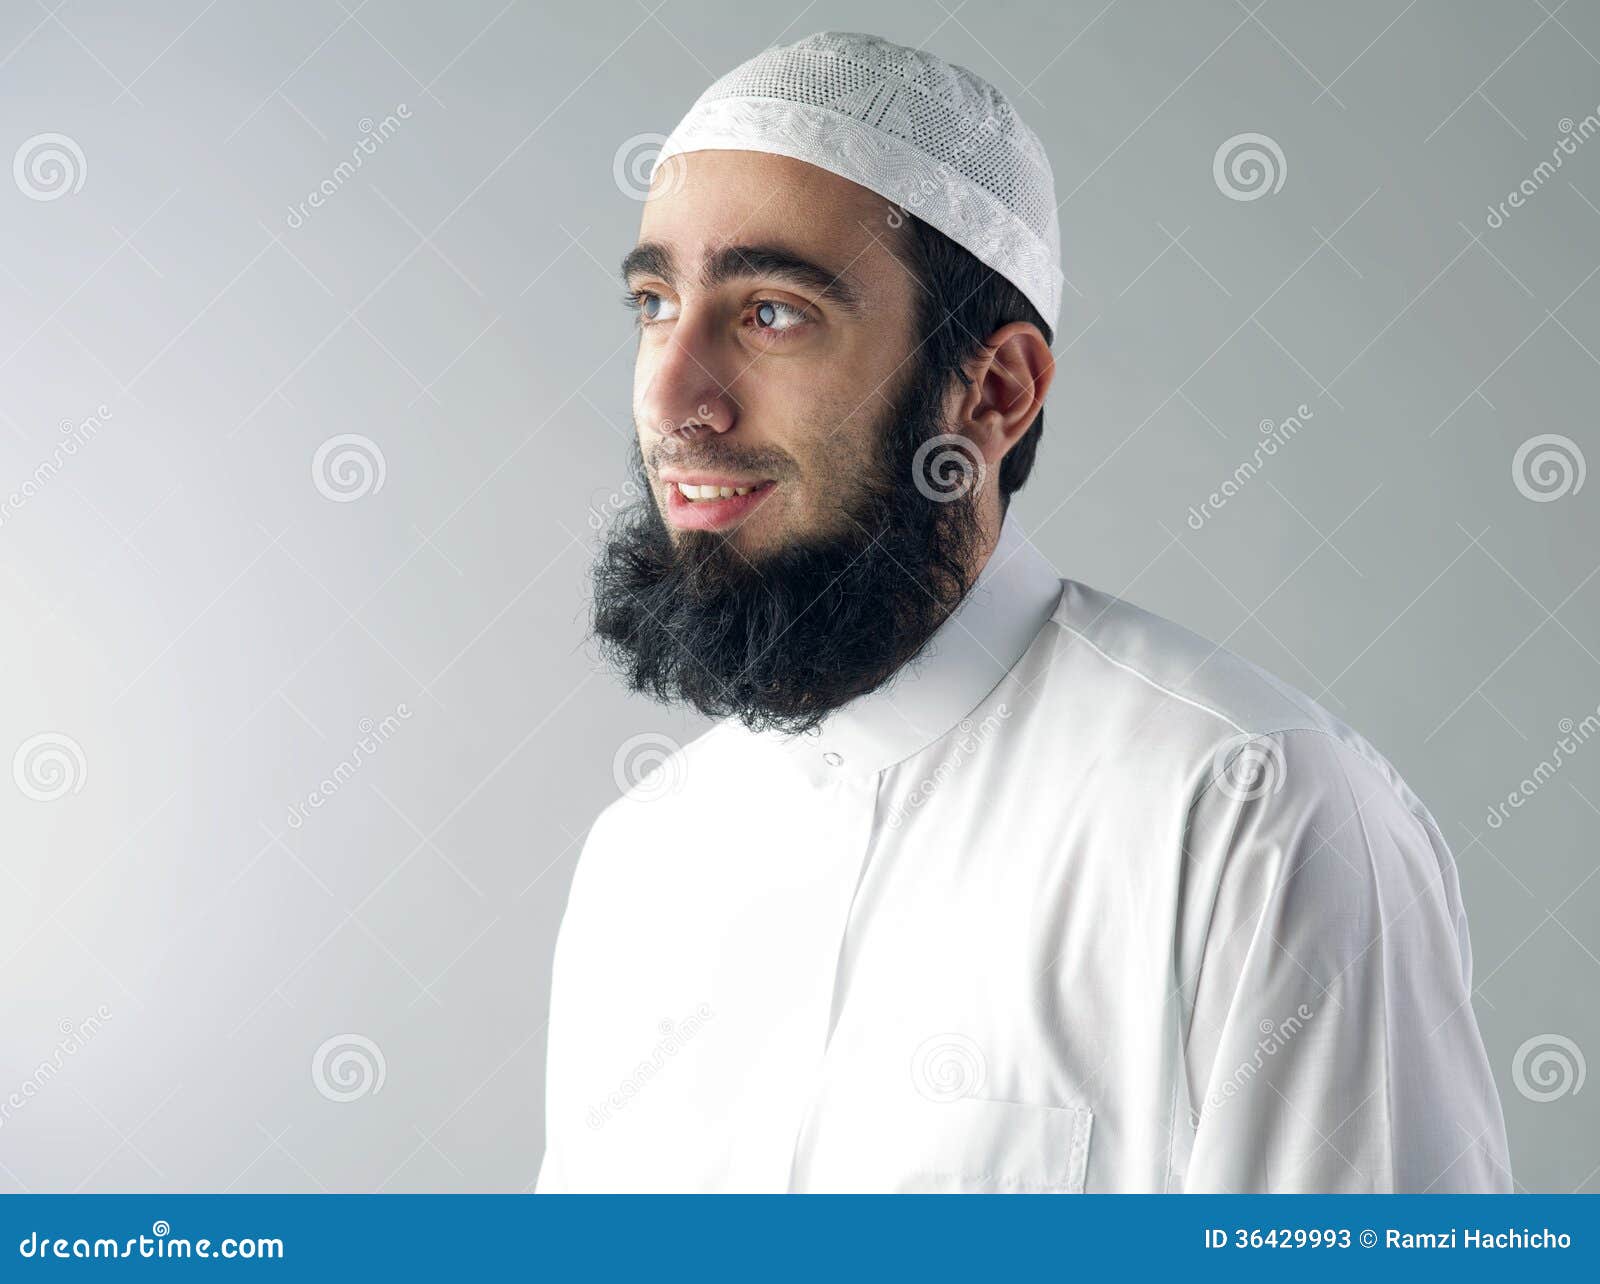 Мусульмане носят усы. Мусульманская борода. Бородатый мусульманин. Борода мусульманина. Мужчина мусульманин.